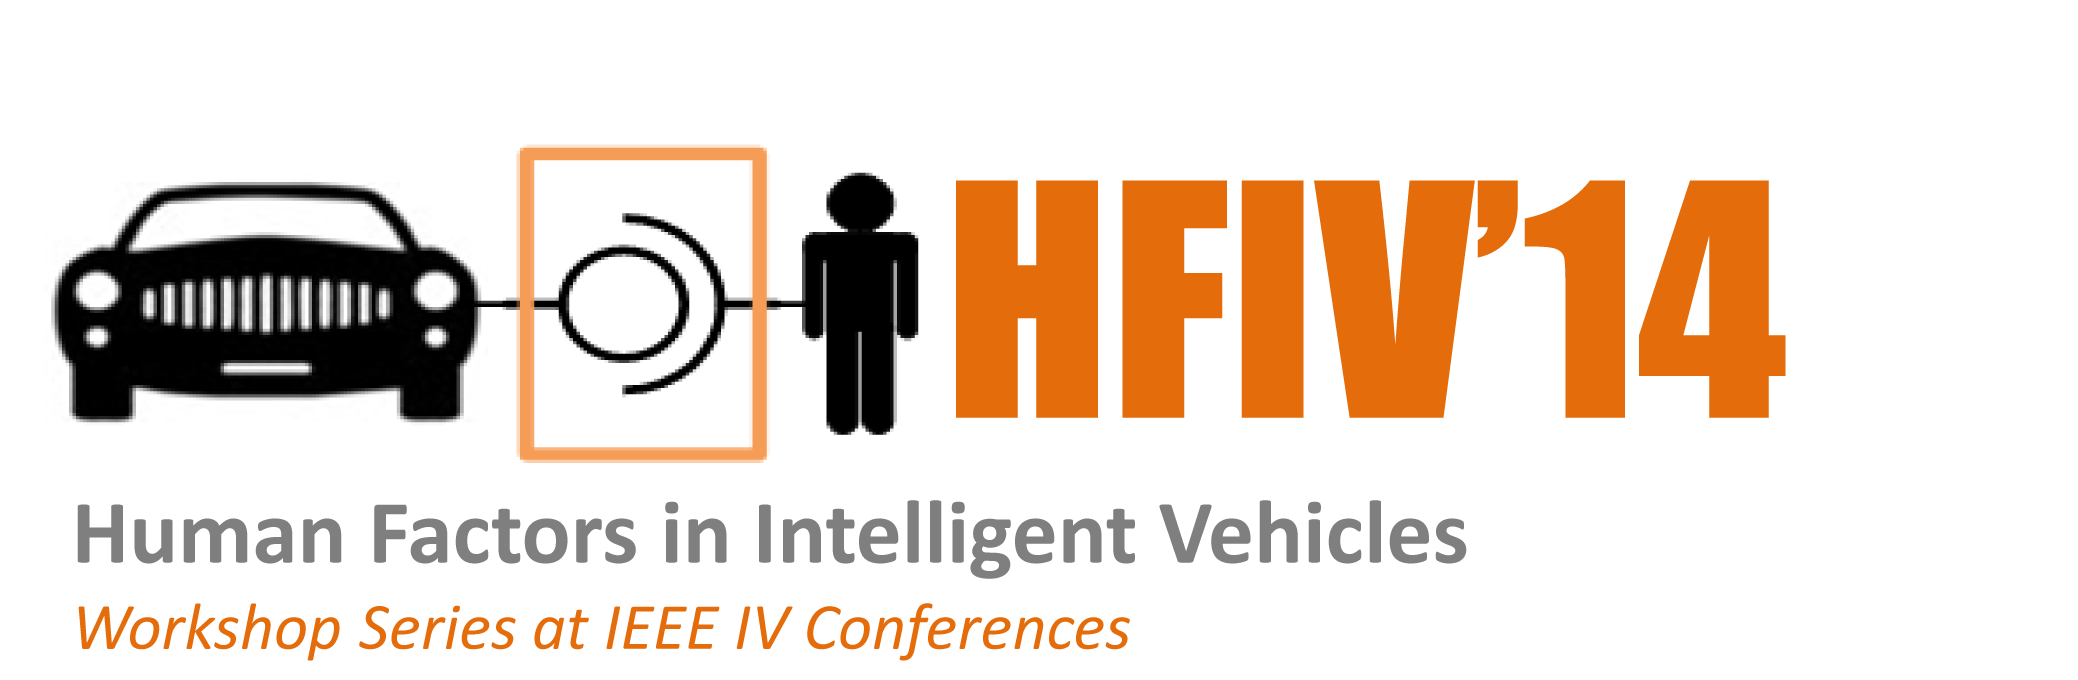 HFIV14 logo